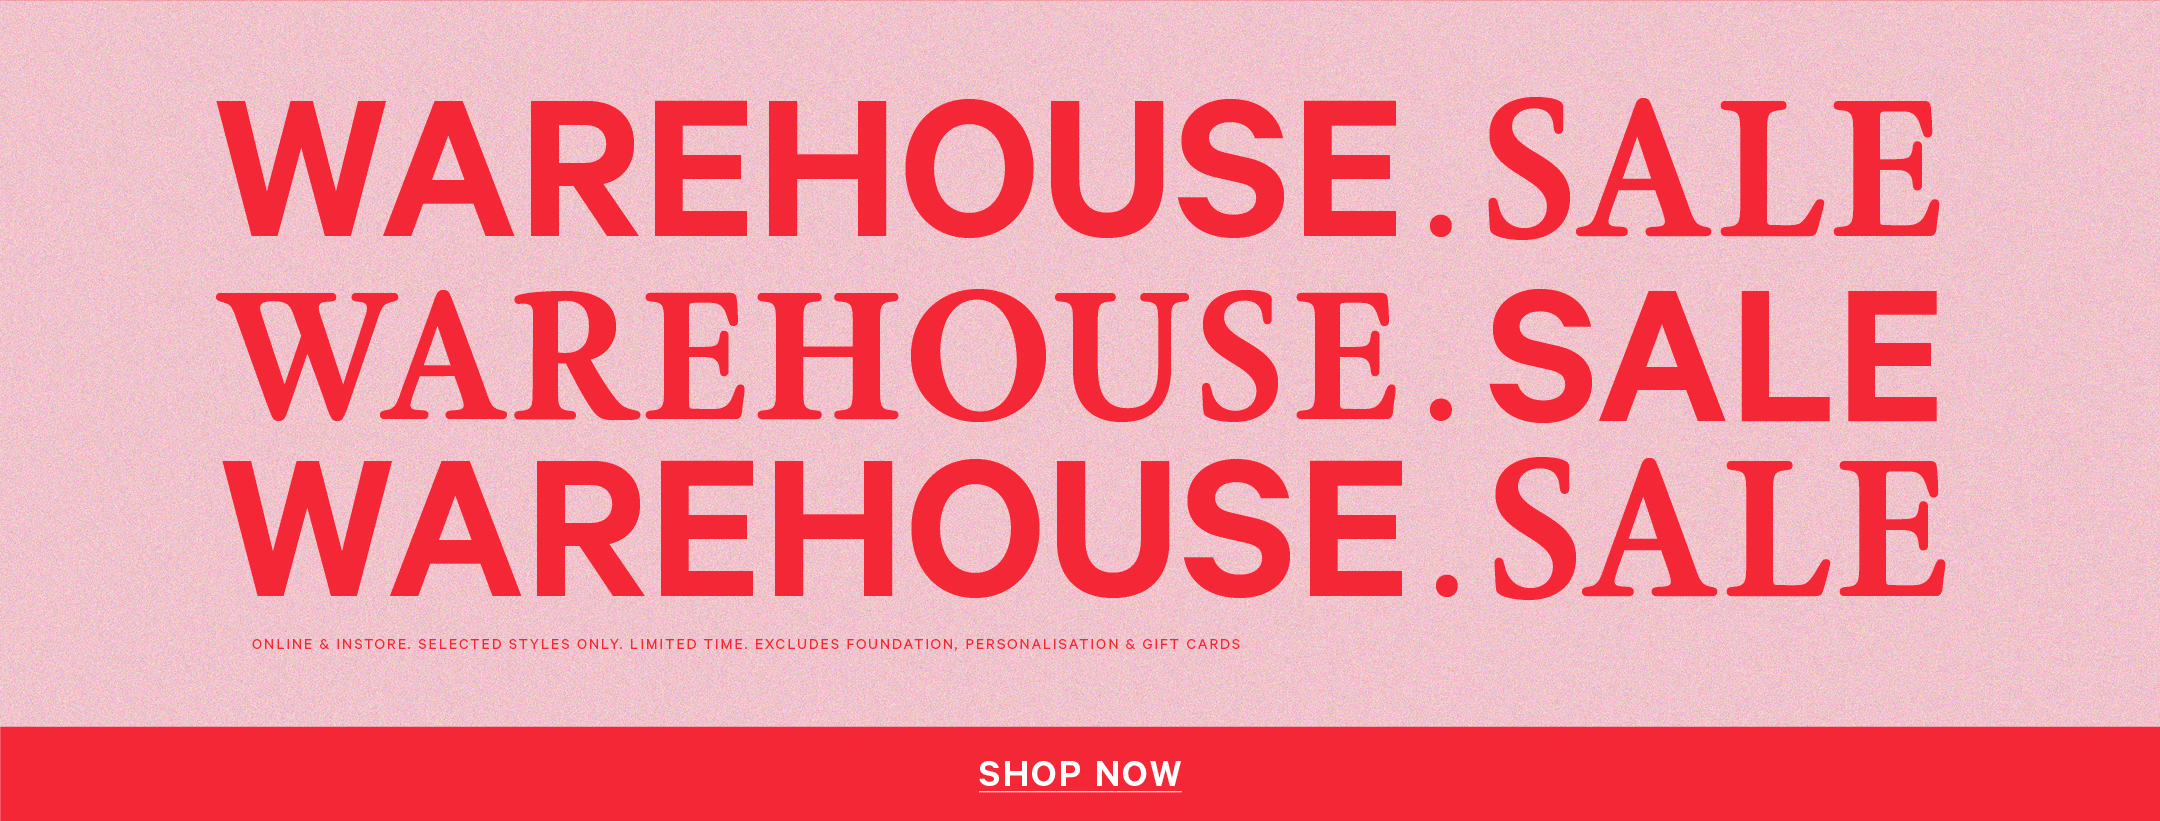 Warehouse Sale. Shop Now!